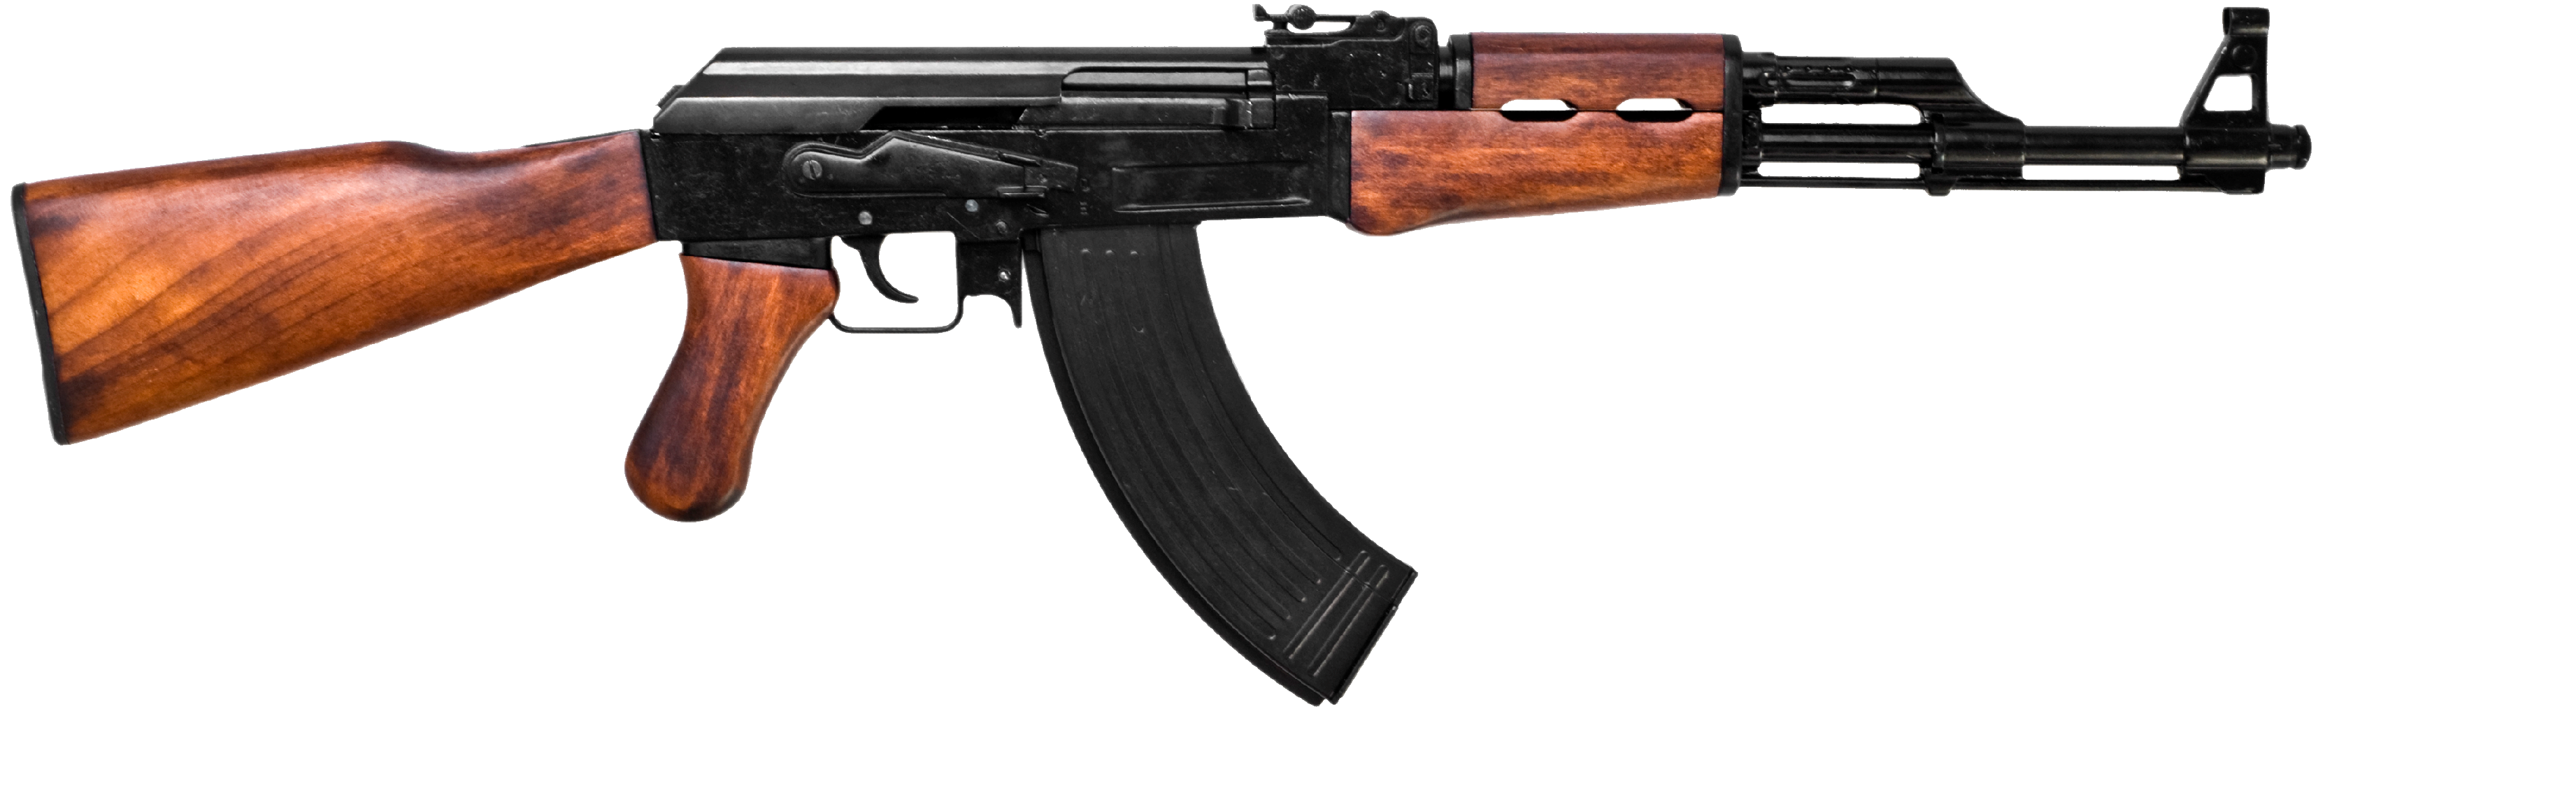 AK-47, Kalash, 러시아 돌격소총